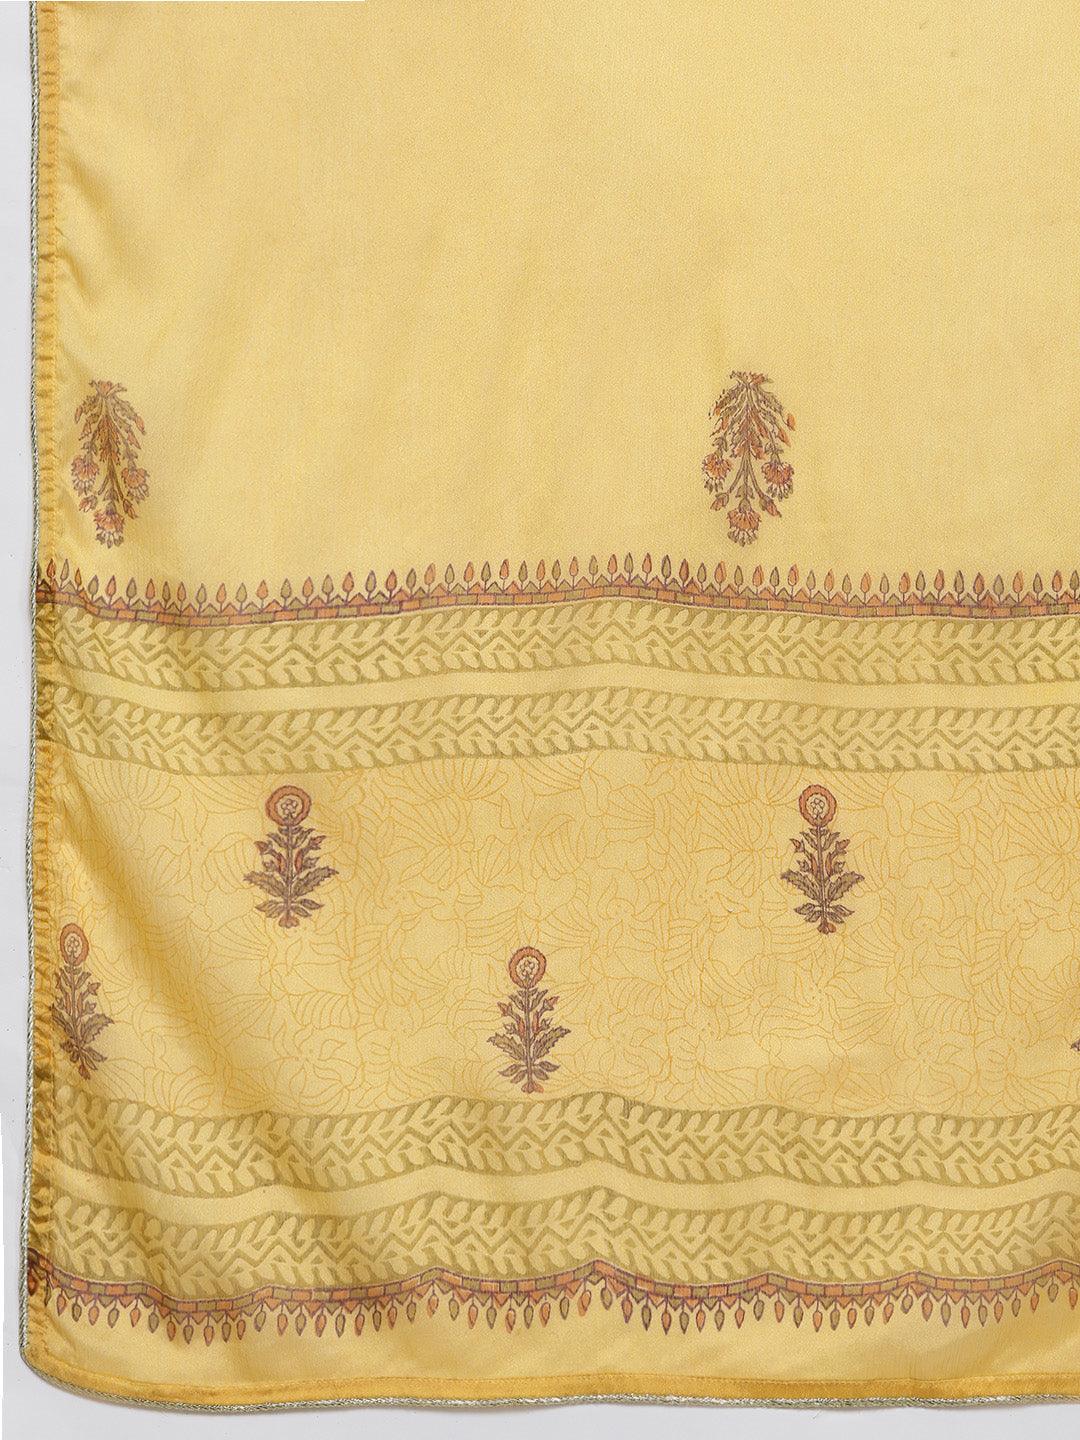 Yellow Printed Chanderi Silk Straight Kurta With Dupatta